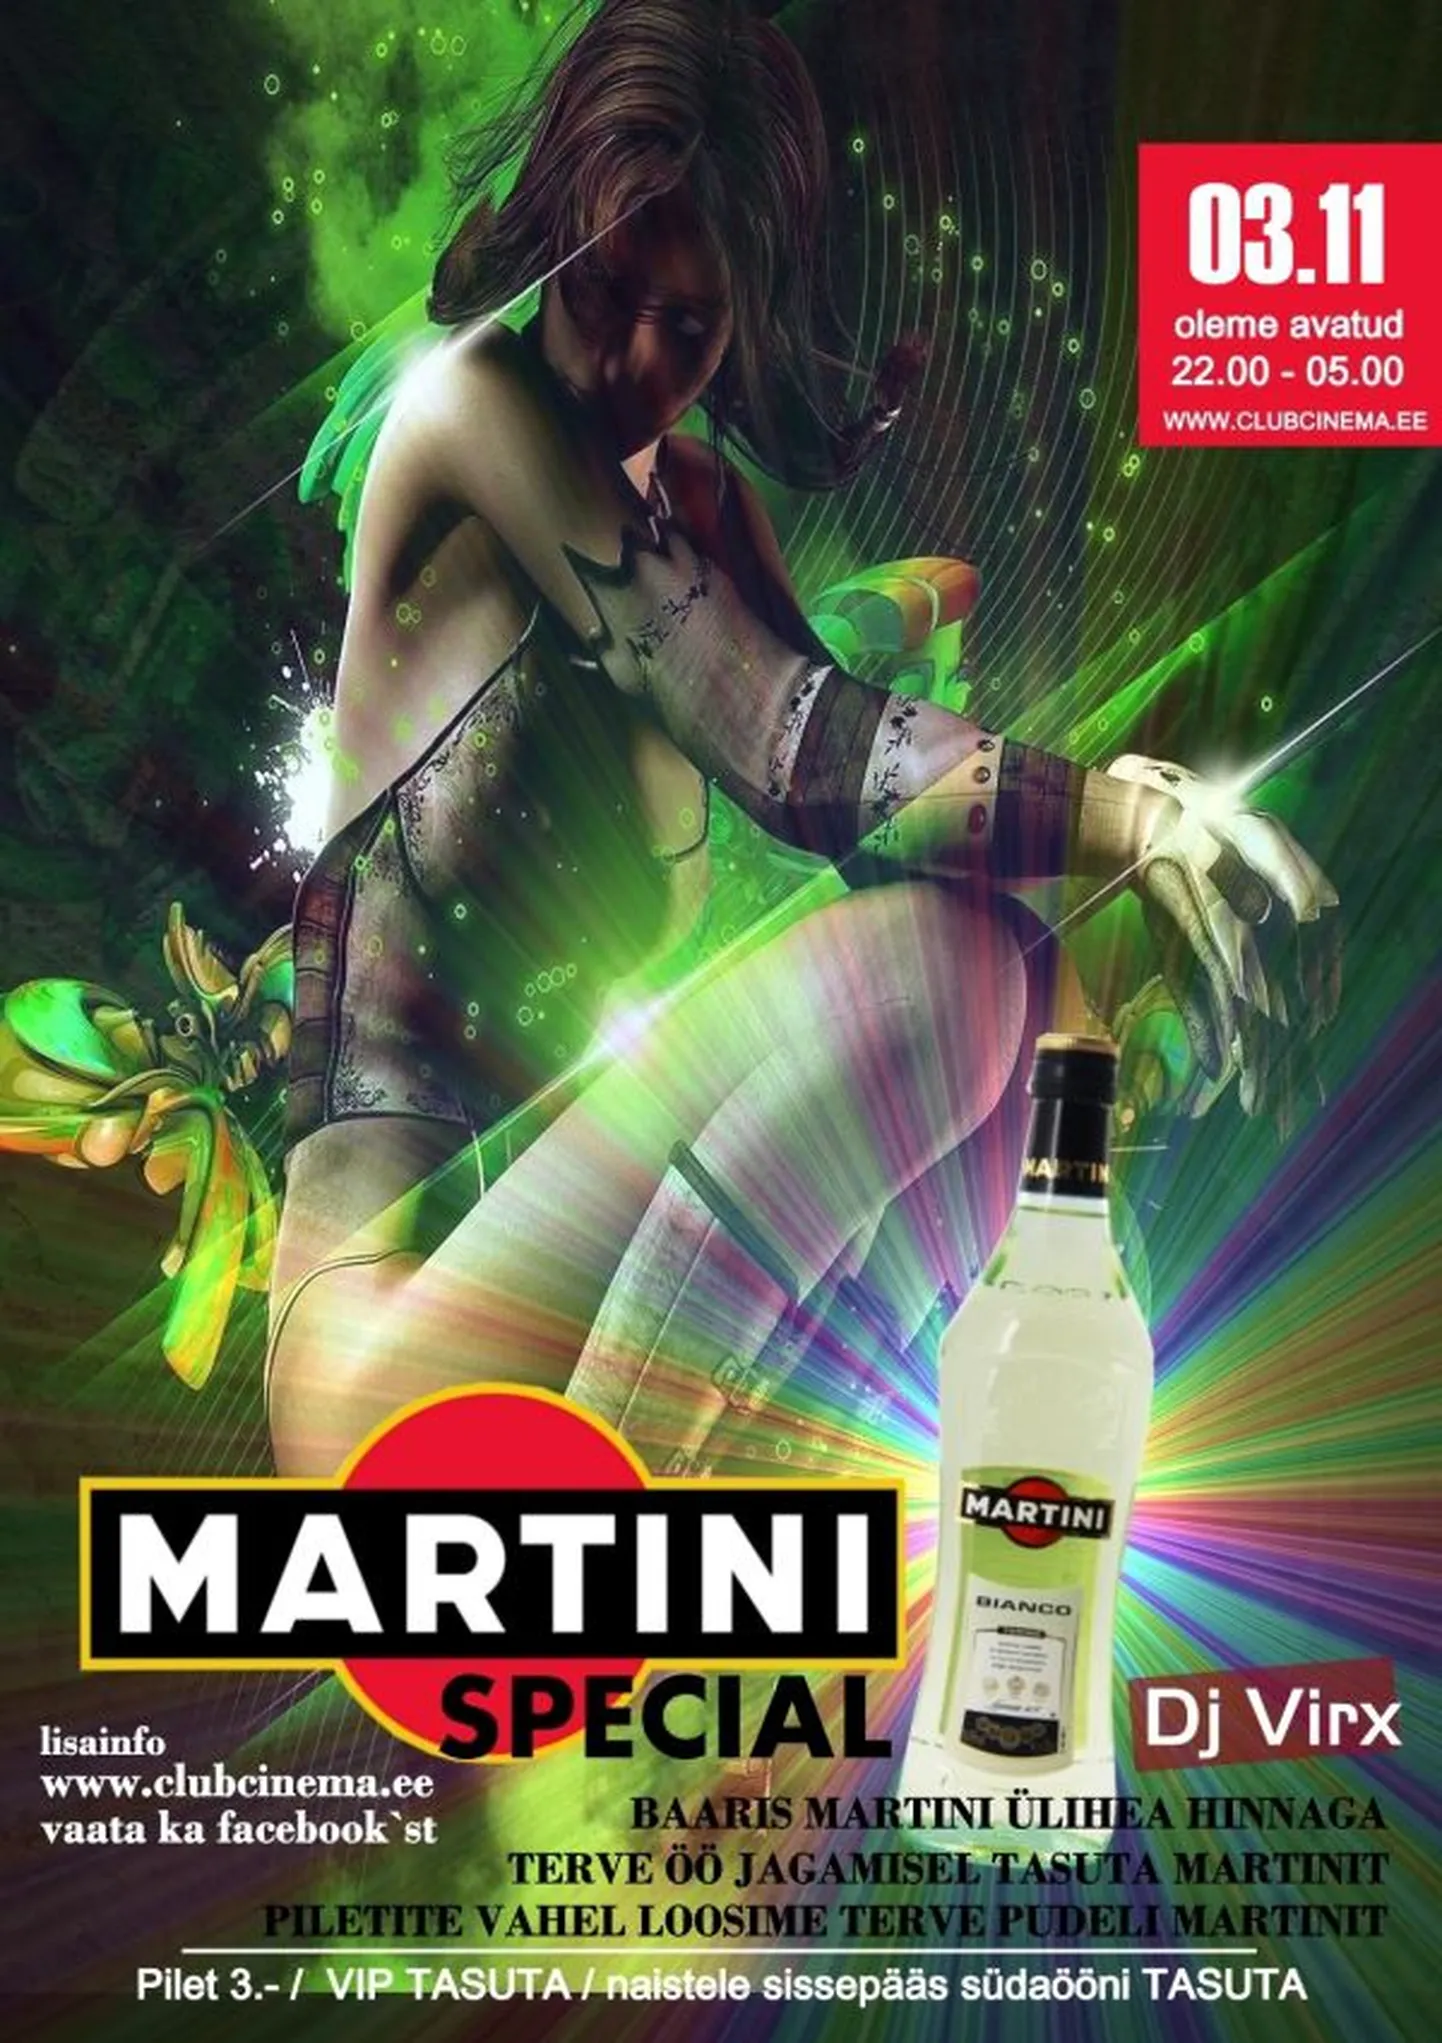 Club Cinemas laupäeval Martini Special!